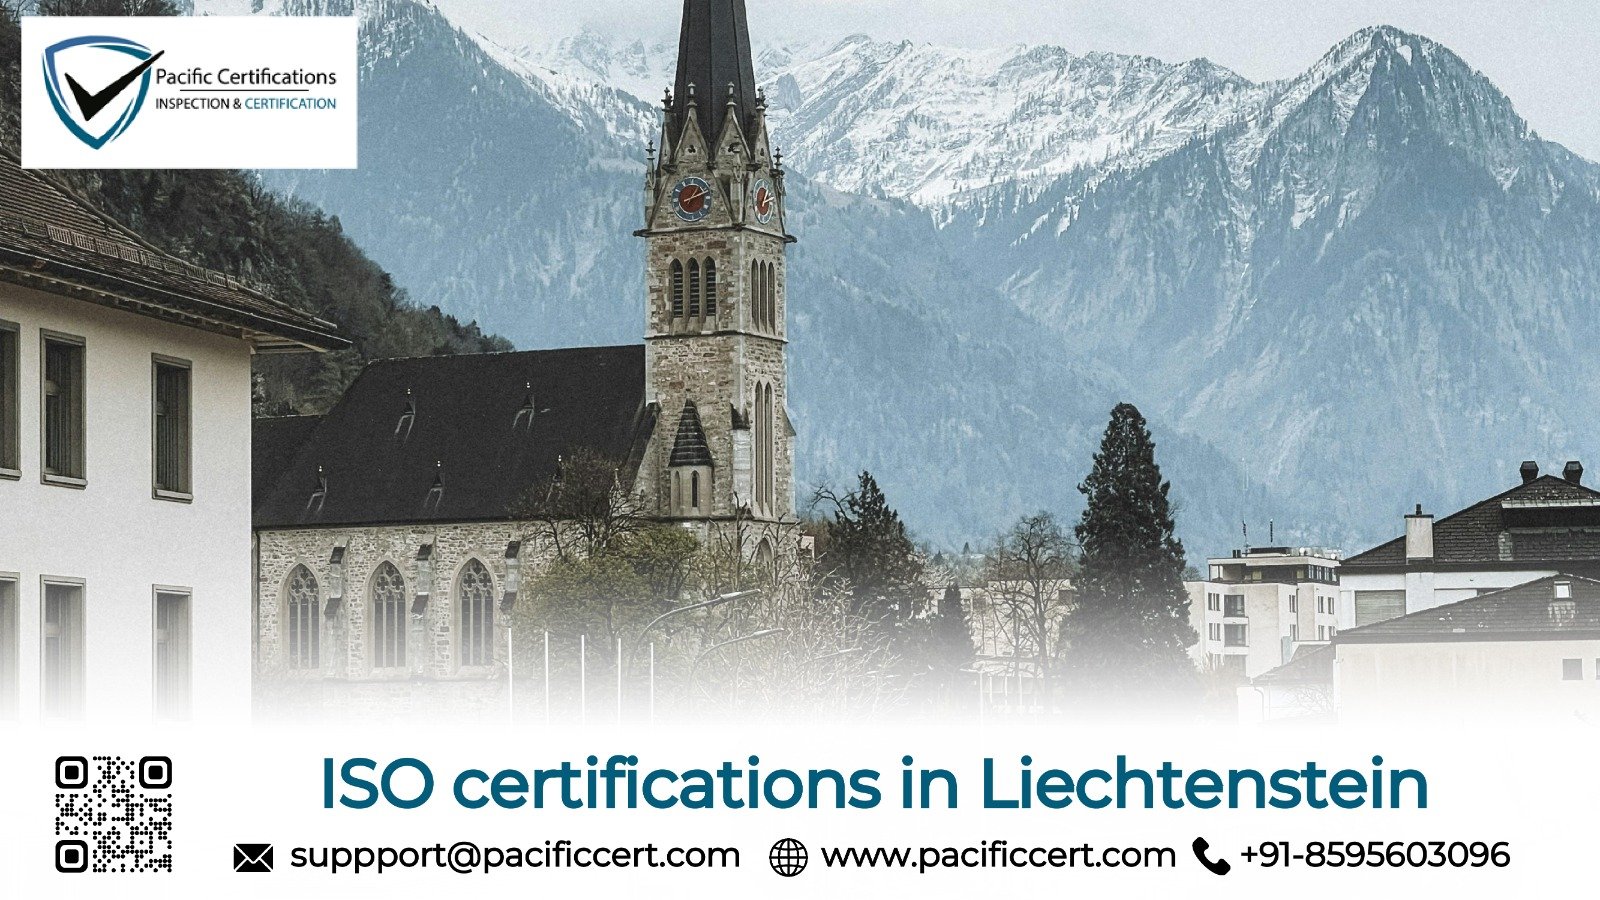 ISO Certifications in Liechtenstein and How Pacific Certifications can help | Pacific Certifications